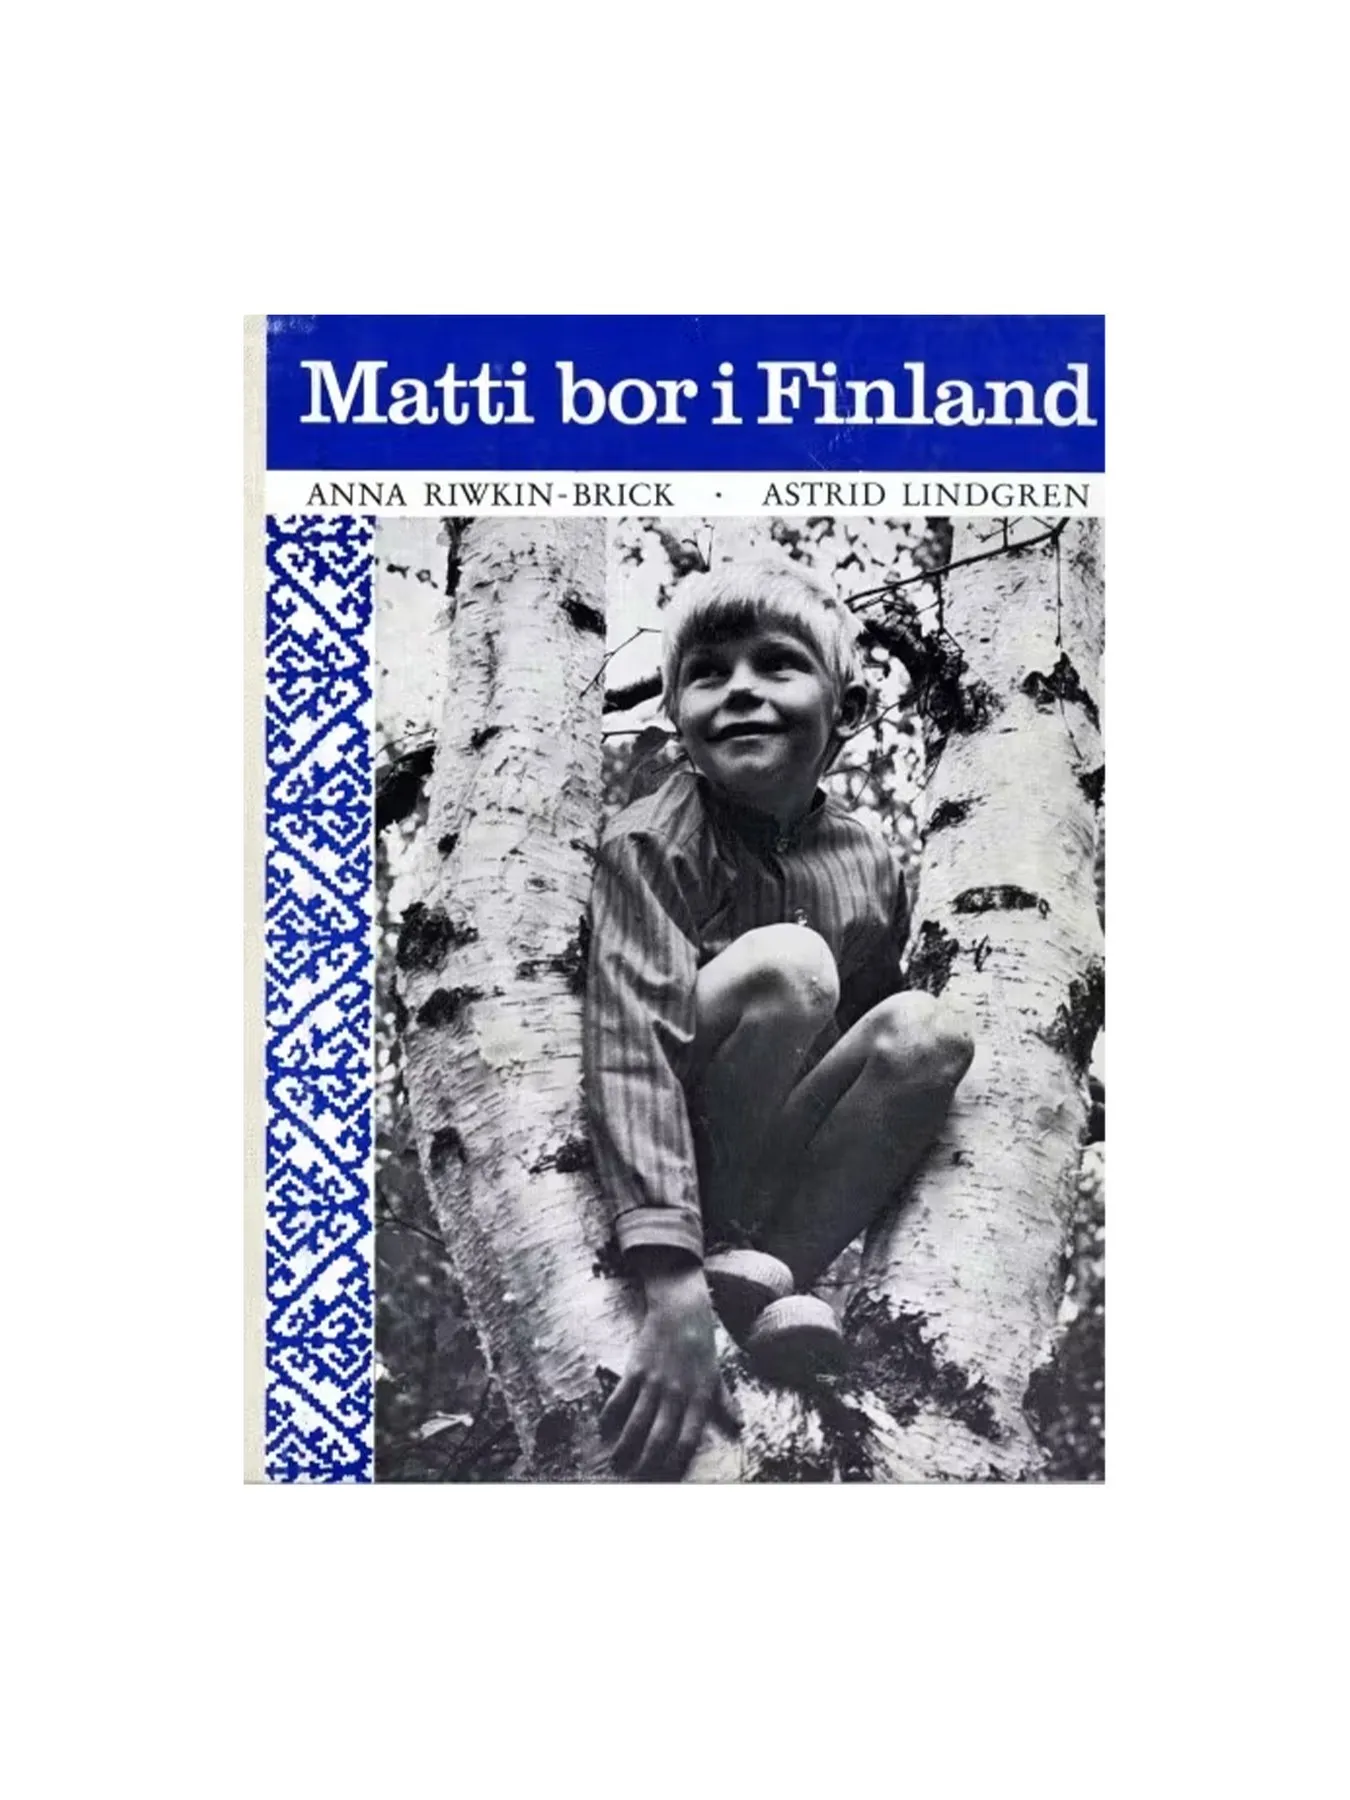 Matti bor i Finland